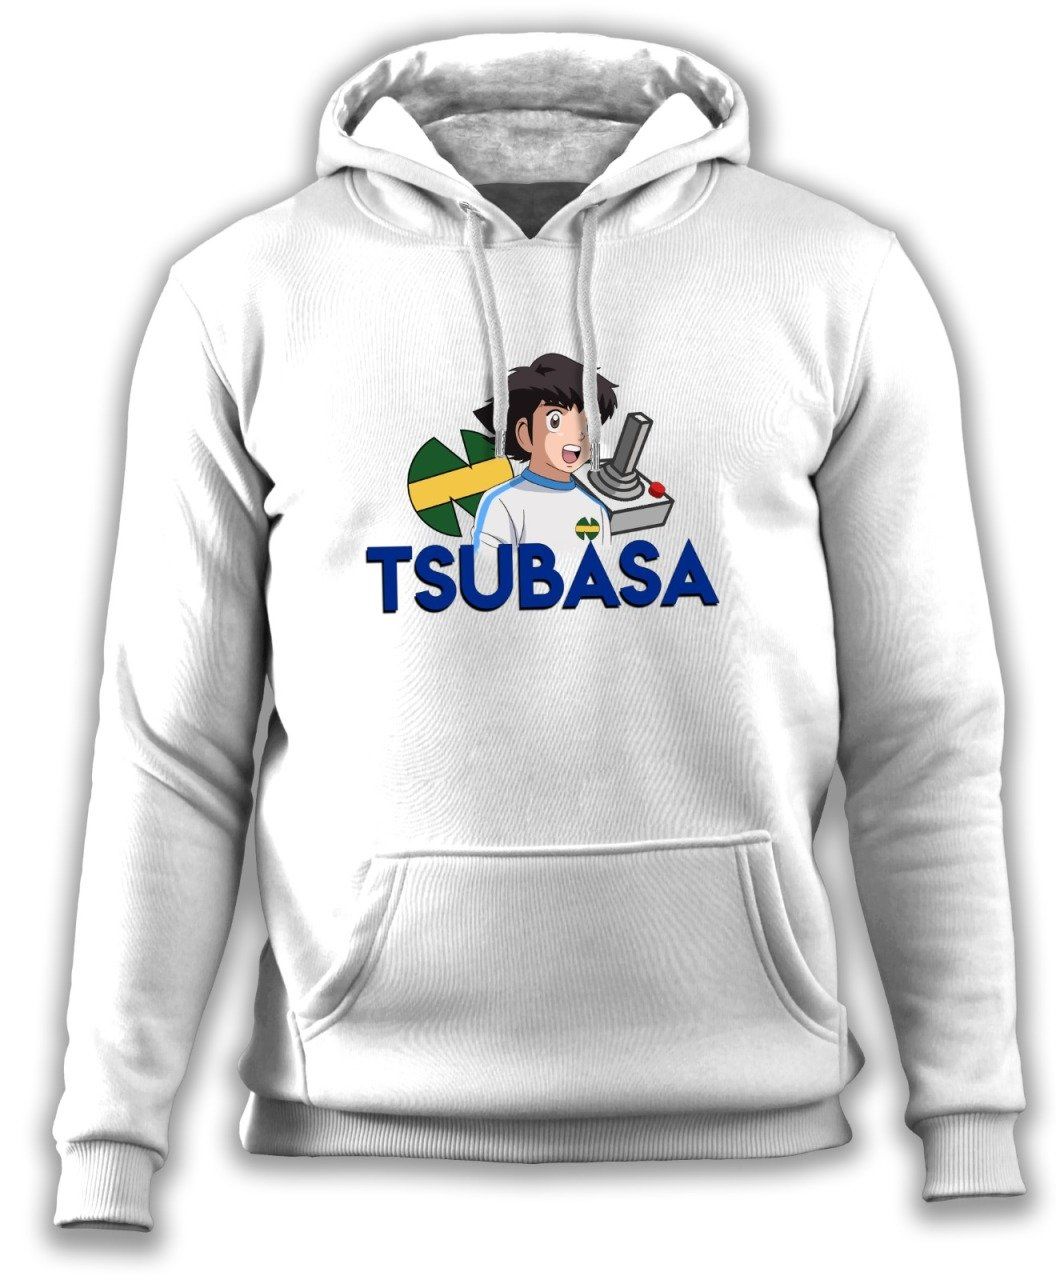 Tsubasa II Sweatshirt